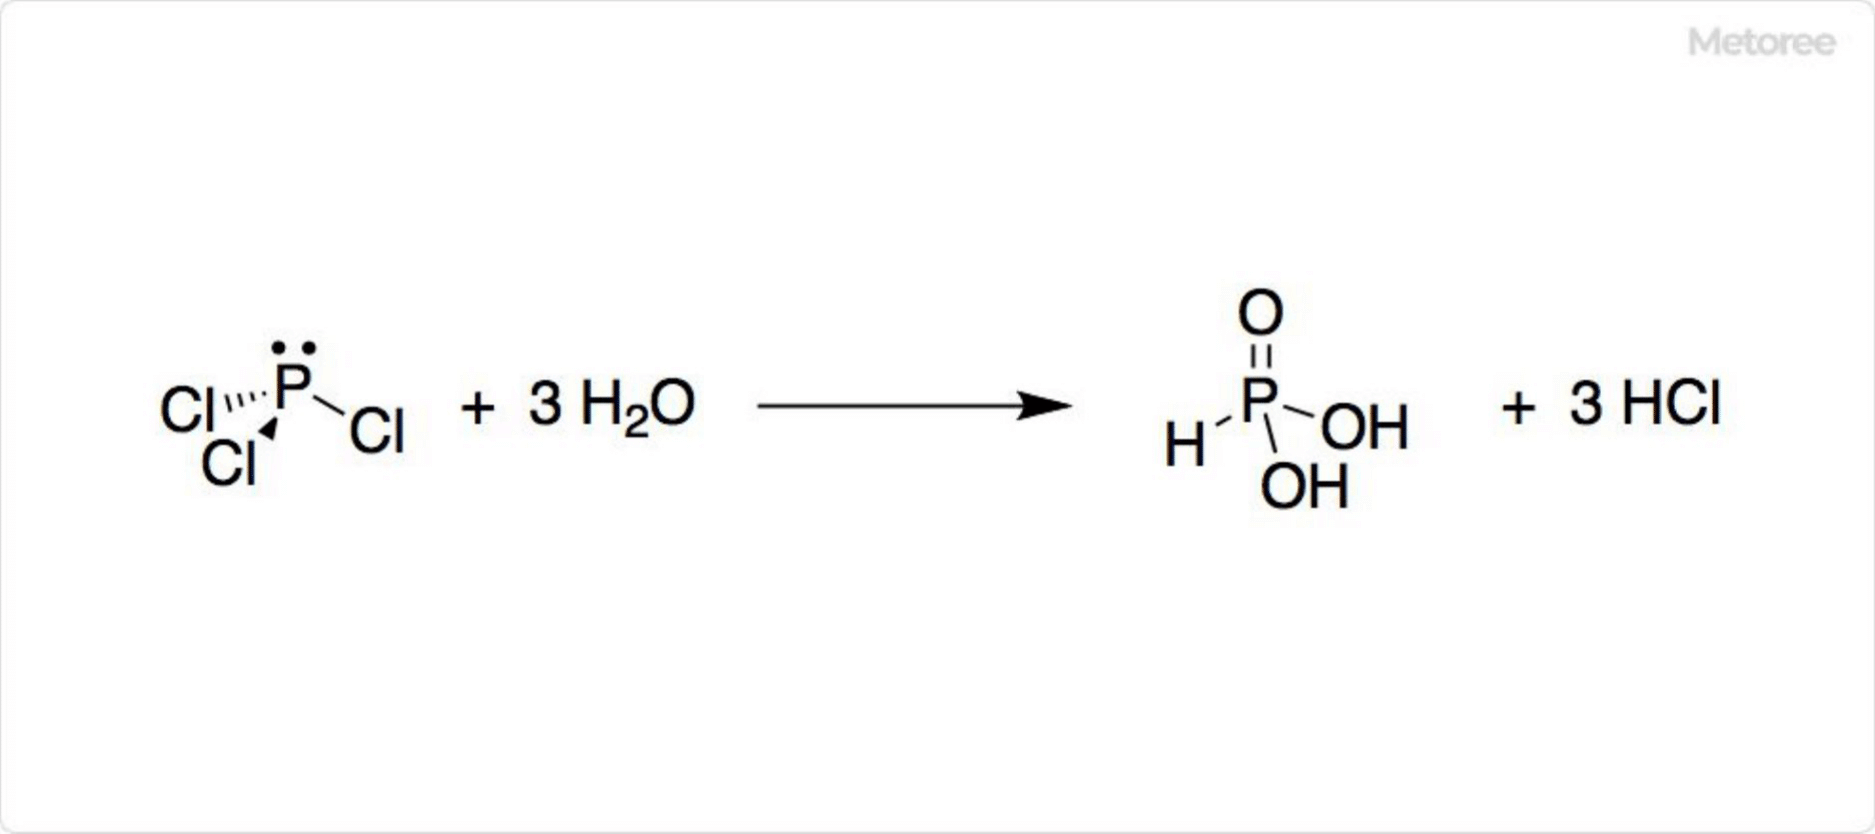 Figure 2. Hydrolysis of phosphorus trichloride